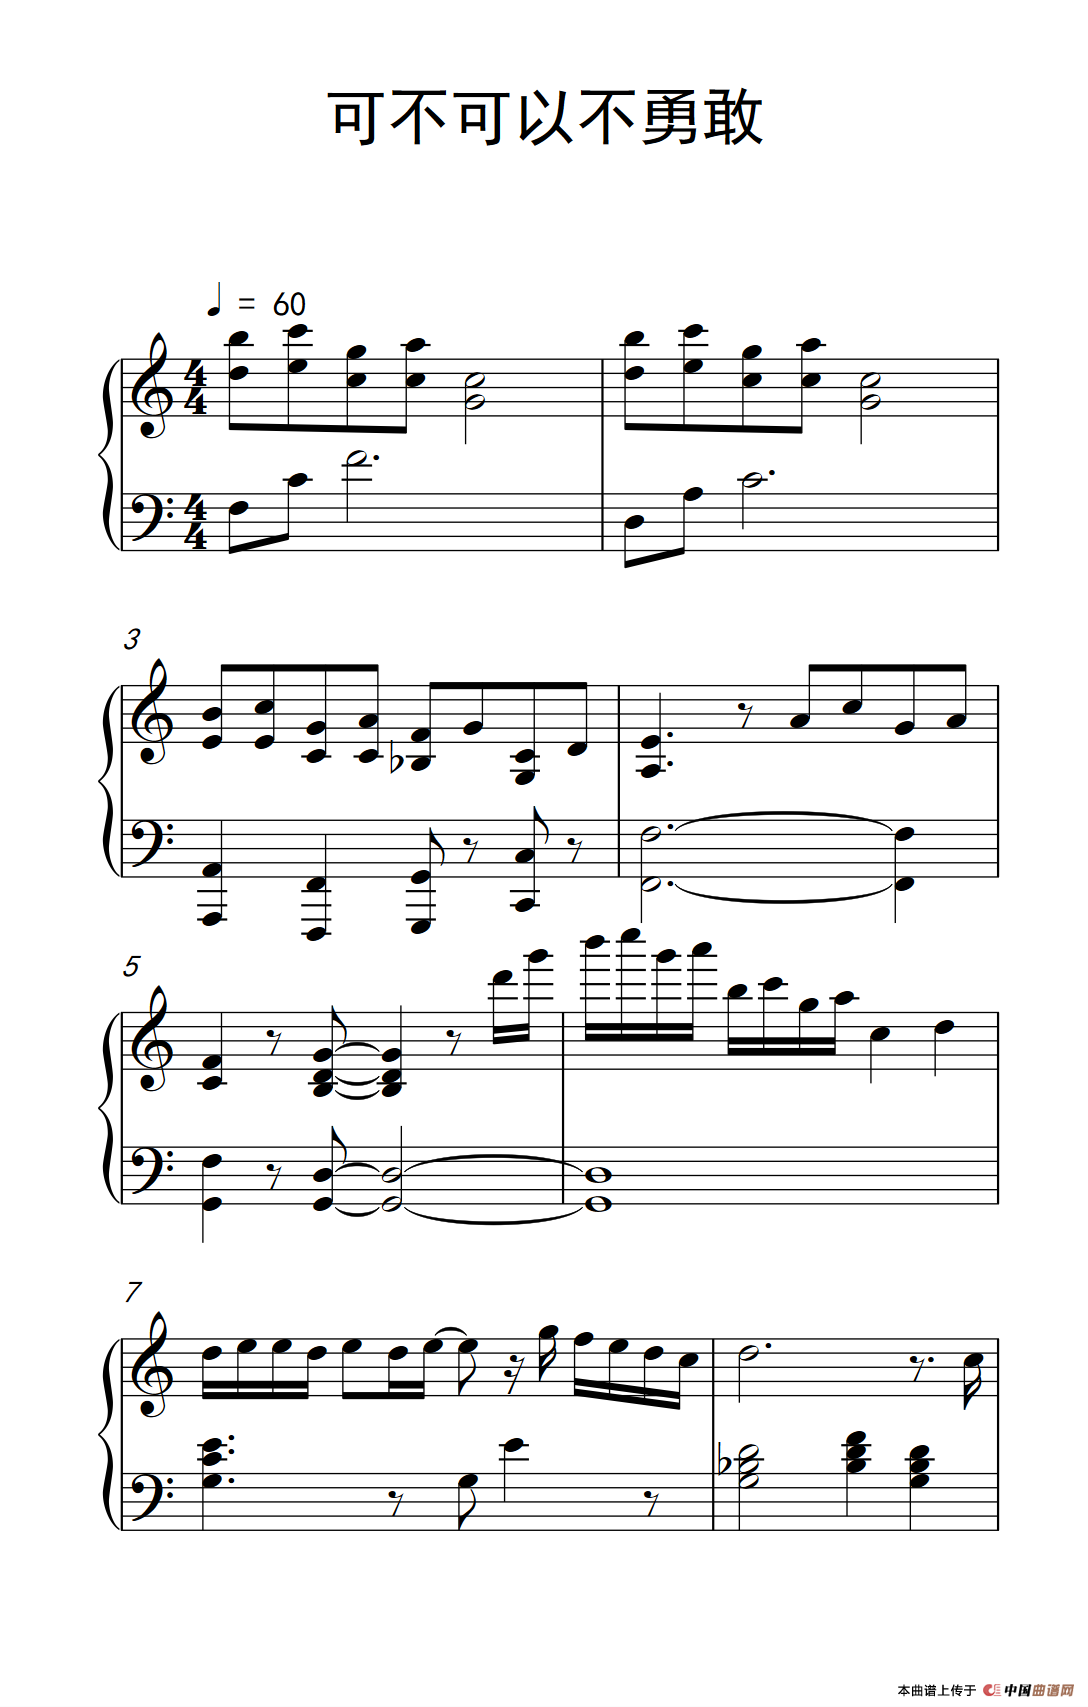 可不可以不勇敢-范玮琪五线谱预览6-钢琴谱文件（五线谱、双手简谱、数字谱、Midi、PDF）免费下载